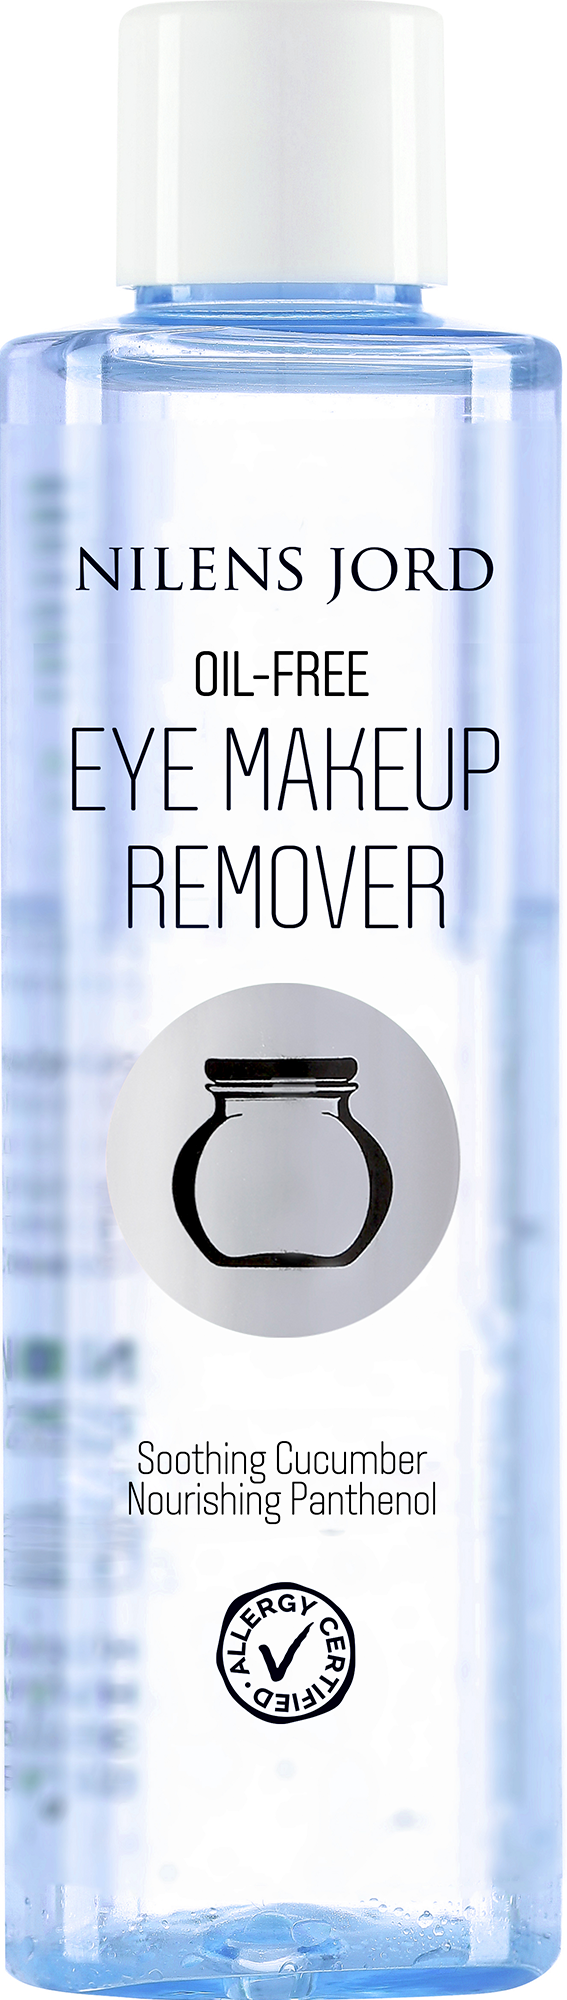 Billede af Nilens Jord Oil-Free Eye Makeup Remover 125 ml. hos Well.dk